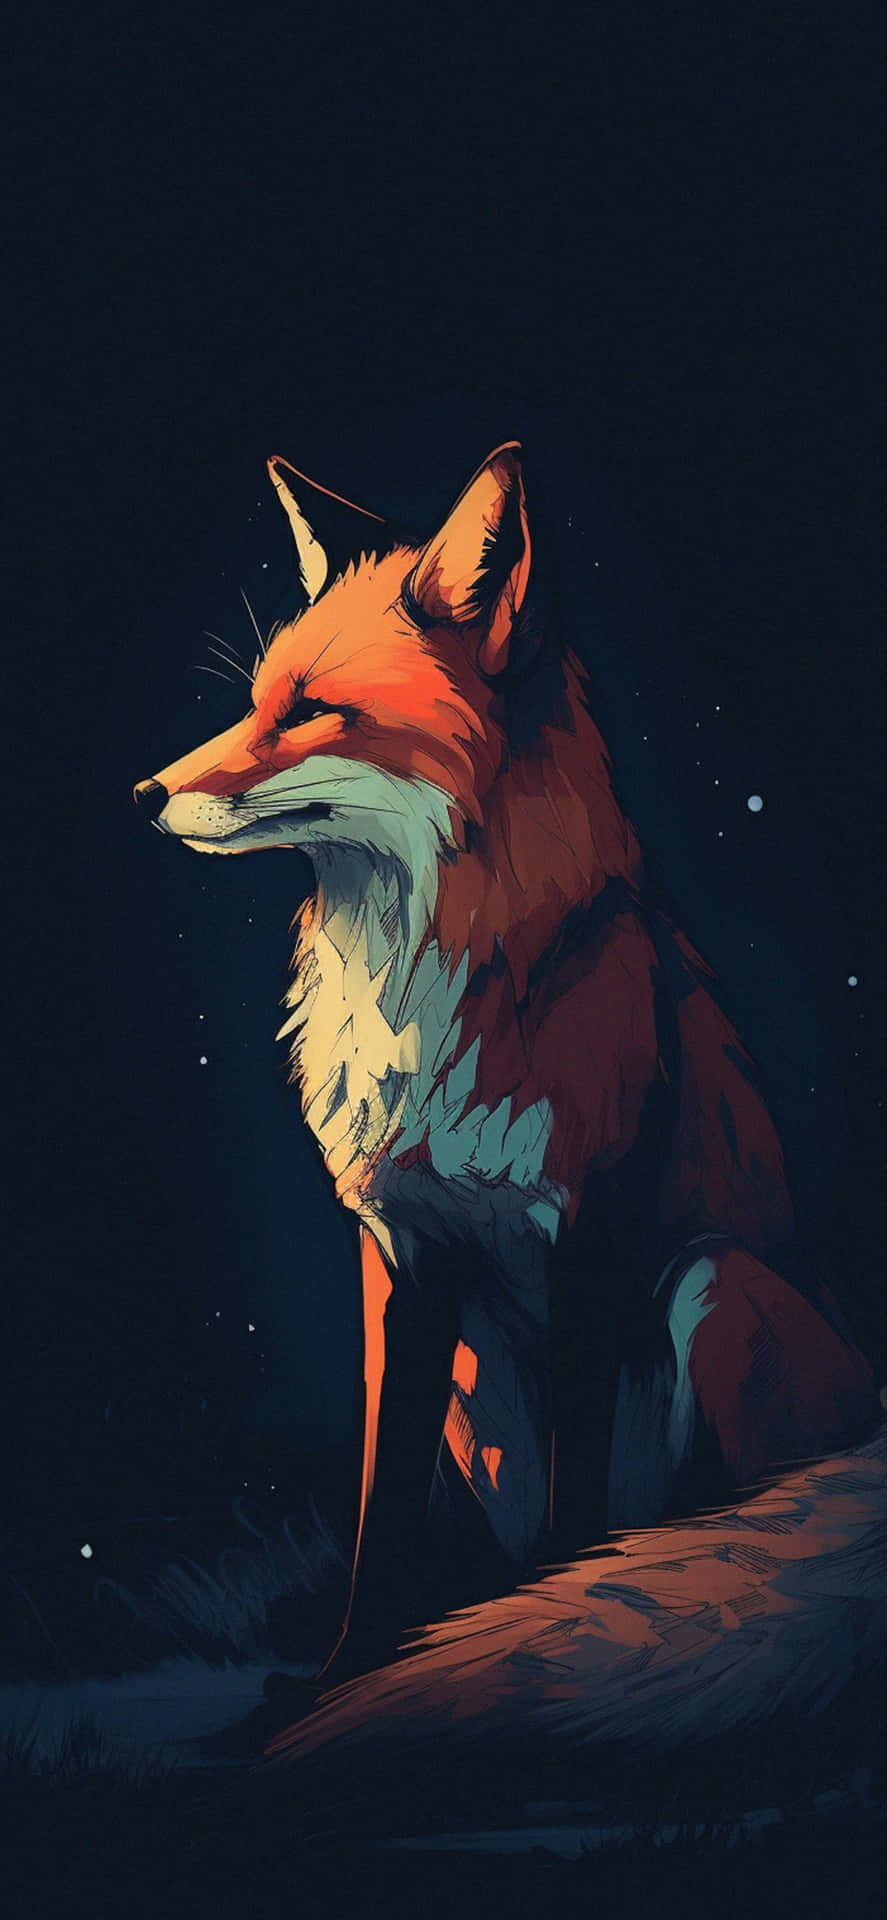 Mystical Nighttime Fox Art Wallpaper